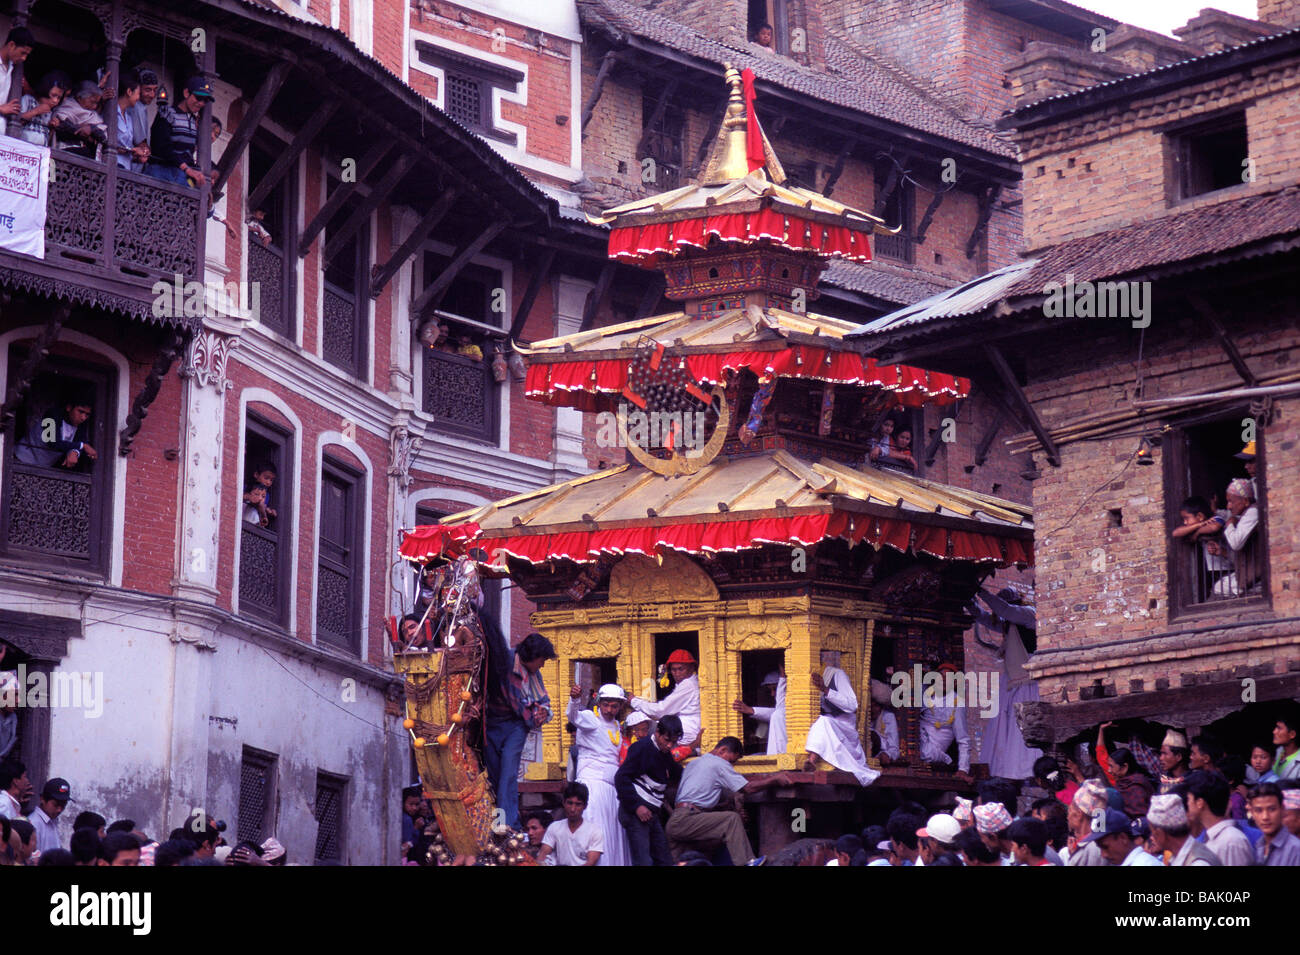 La vallée de Katmandou, Népal, Zone Bagmati, district de Bhaktapur, Bhaktapur, Festival Bisket Jatra, procession et flotteur Banque D'Images